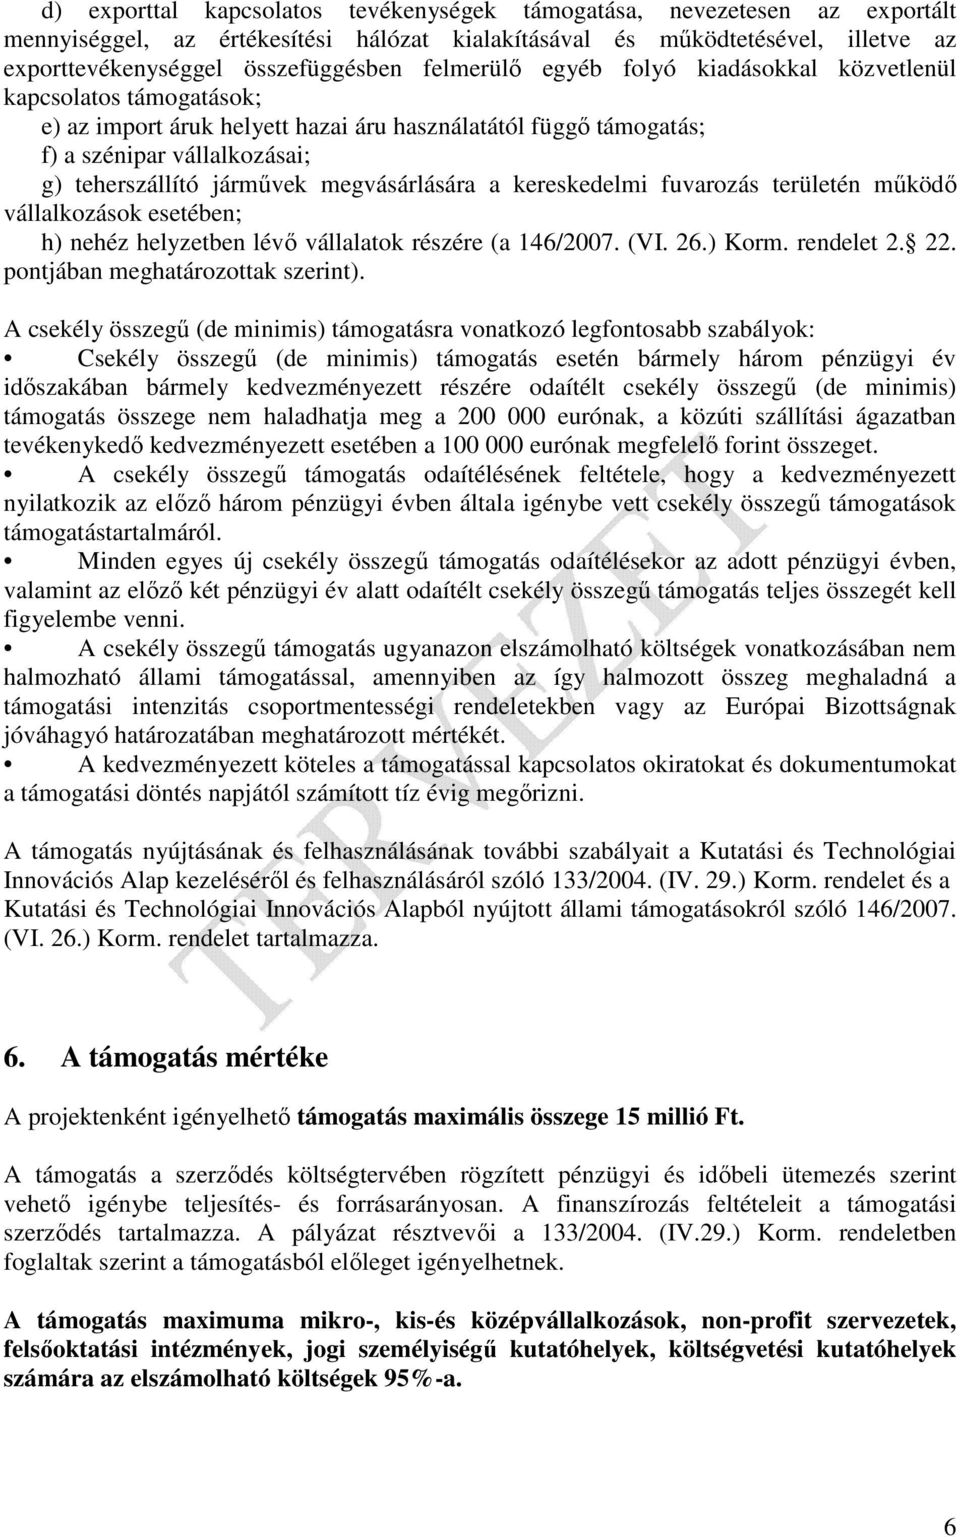 megvásárlására a kereskedelmi fuvarozás területén mőködı vállalkozások esetében; h) nehéz helyzetben lévı vállalatok részére (a 146/2007. (VI. 26.) Korm. rendelet 2. 22.